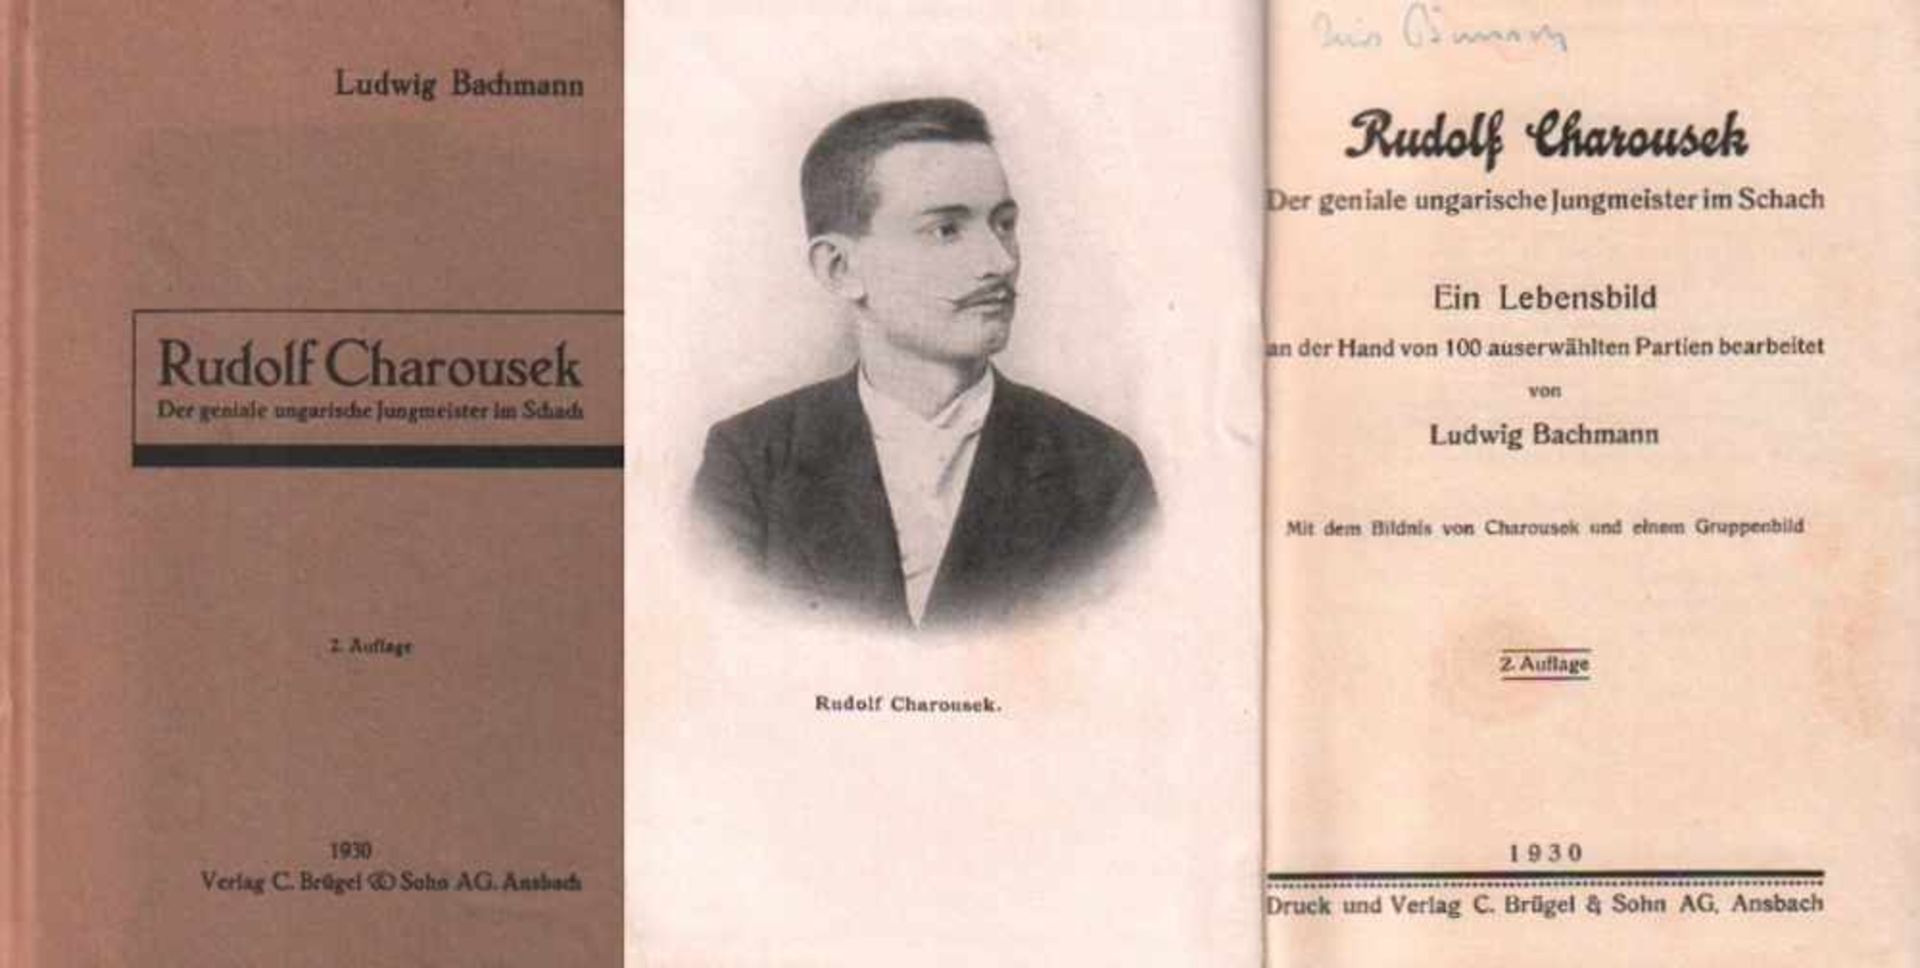 Charousek. Bachmann, Ludwig.Rudolf Charousek. Der geniale ungarische Jungmeister im Schach. Ein